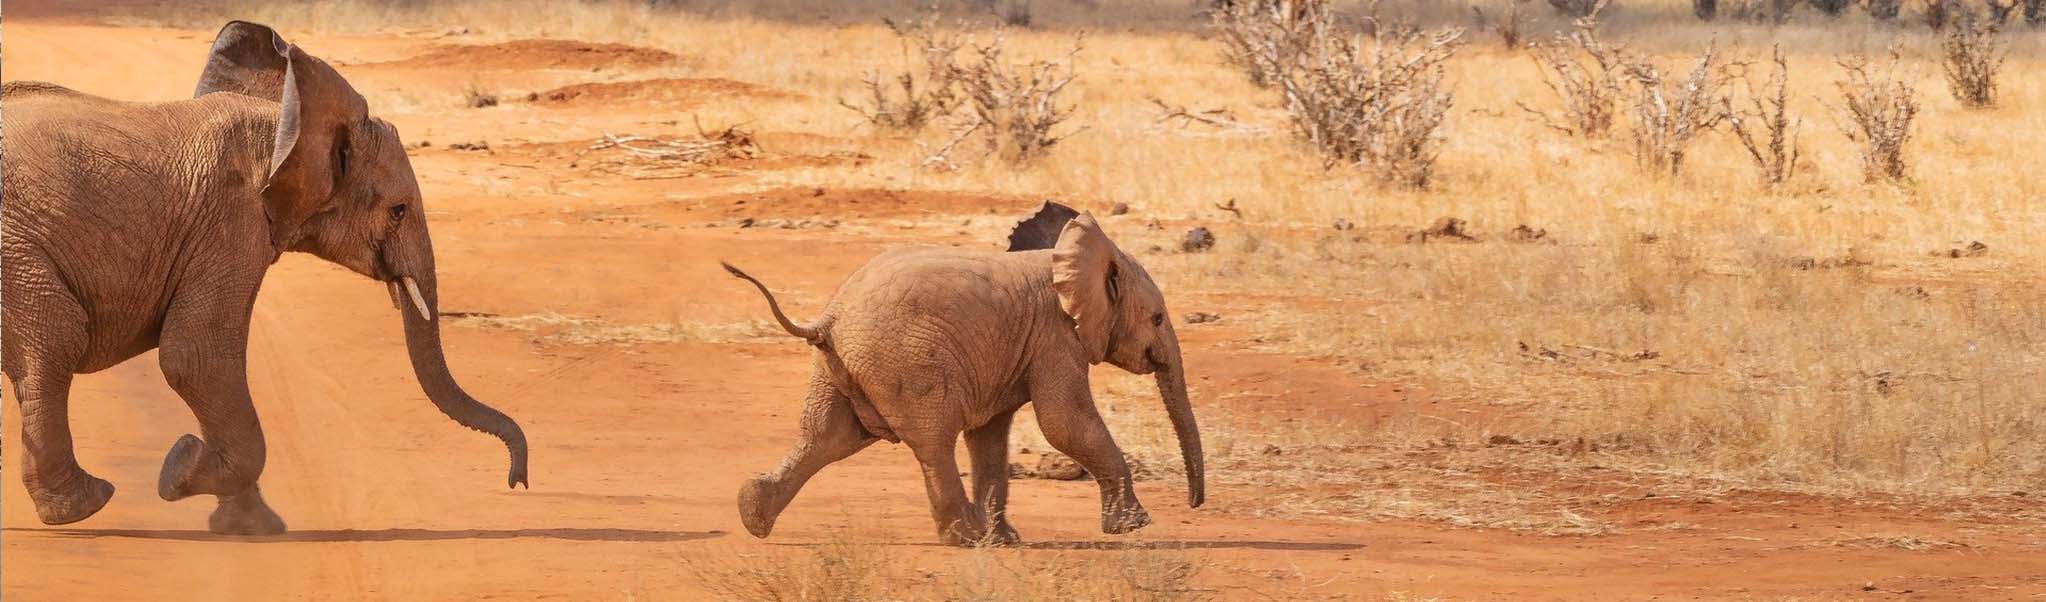 safari elephant afrique vincent thepaut